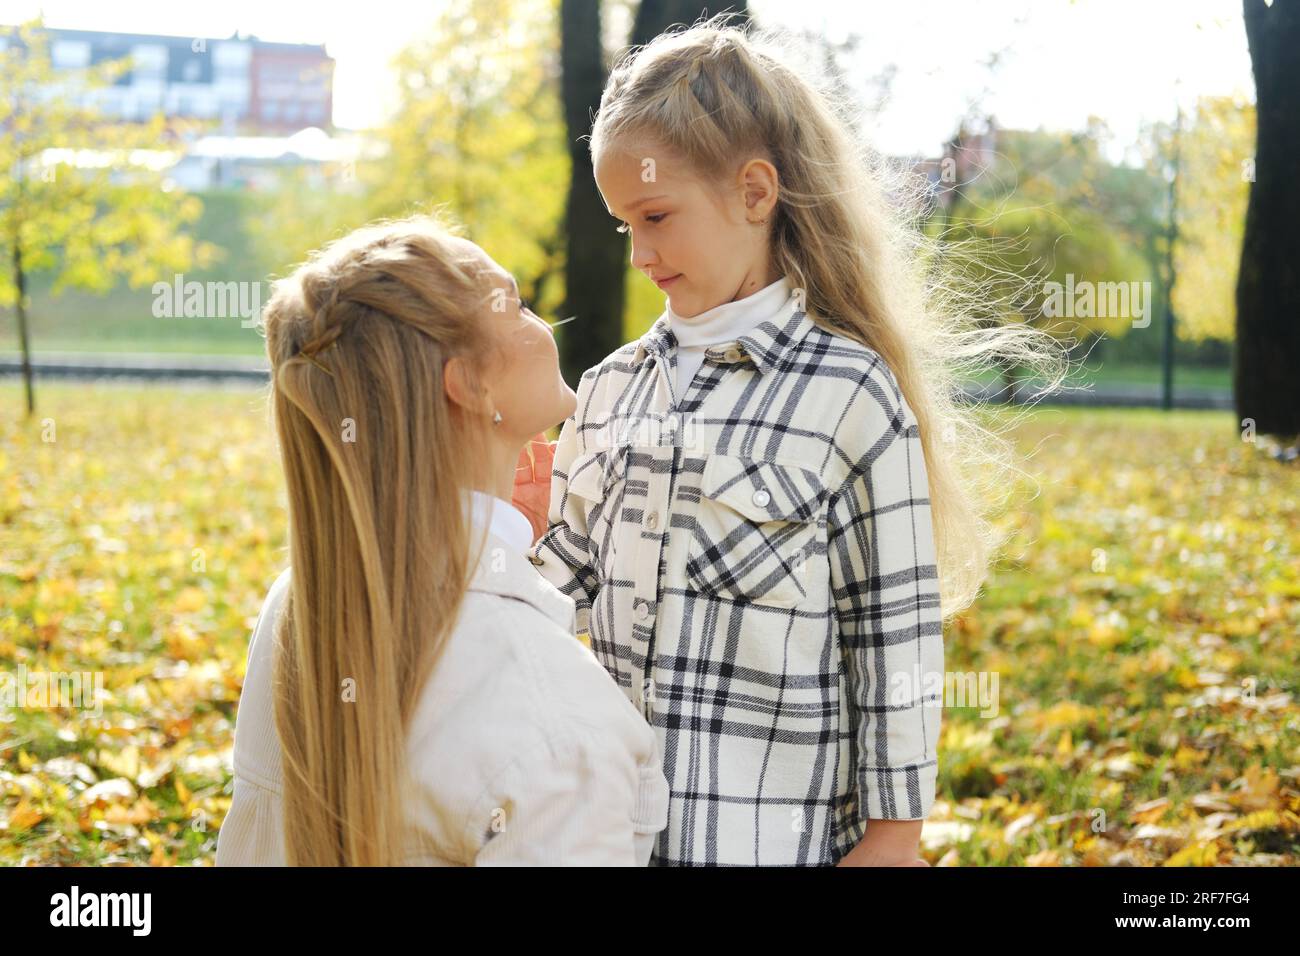 Mutter und Tochter verbringen Zeit zusammen im Herbstpark. Mutter sieht ihre Tochter liebevoll an. Horiontalfoto Stockfoto